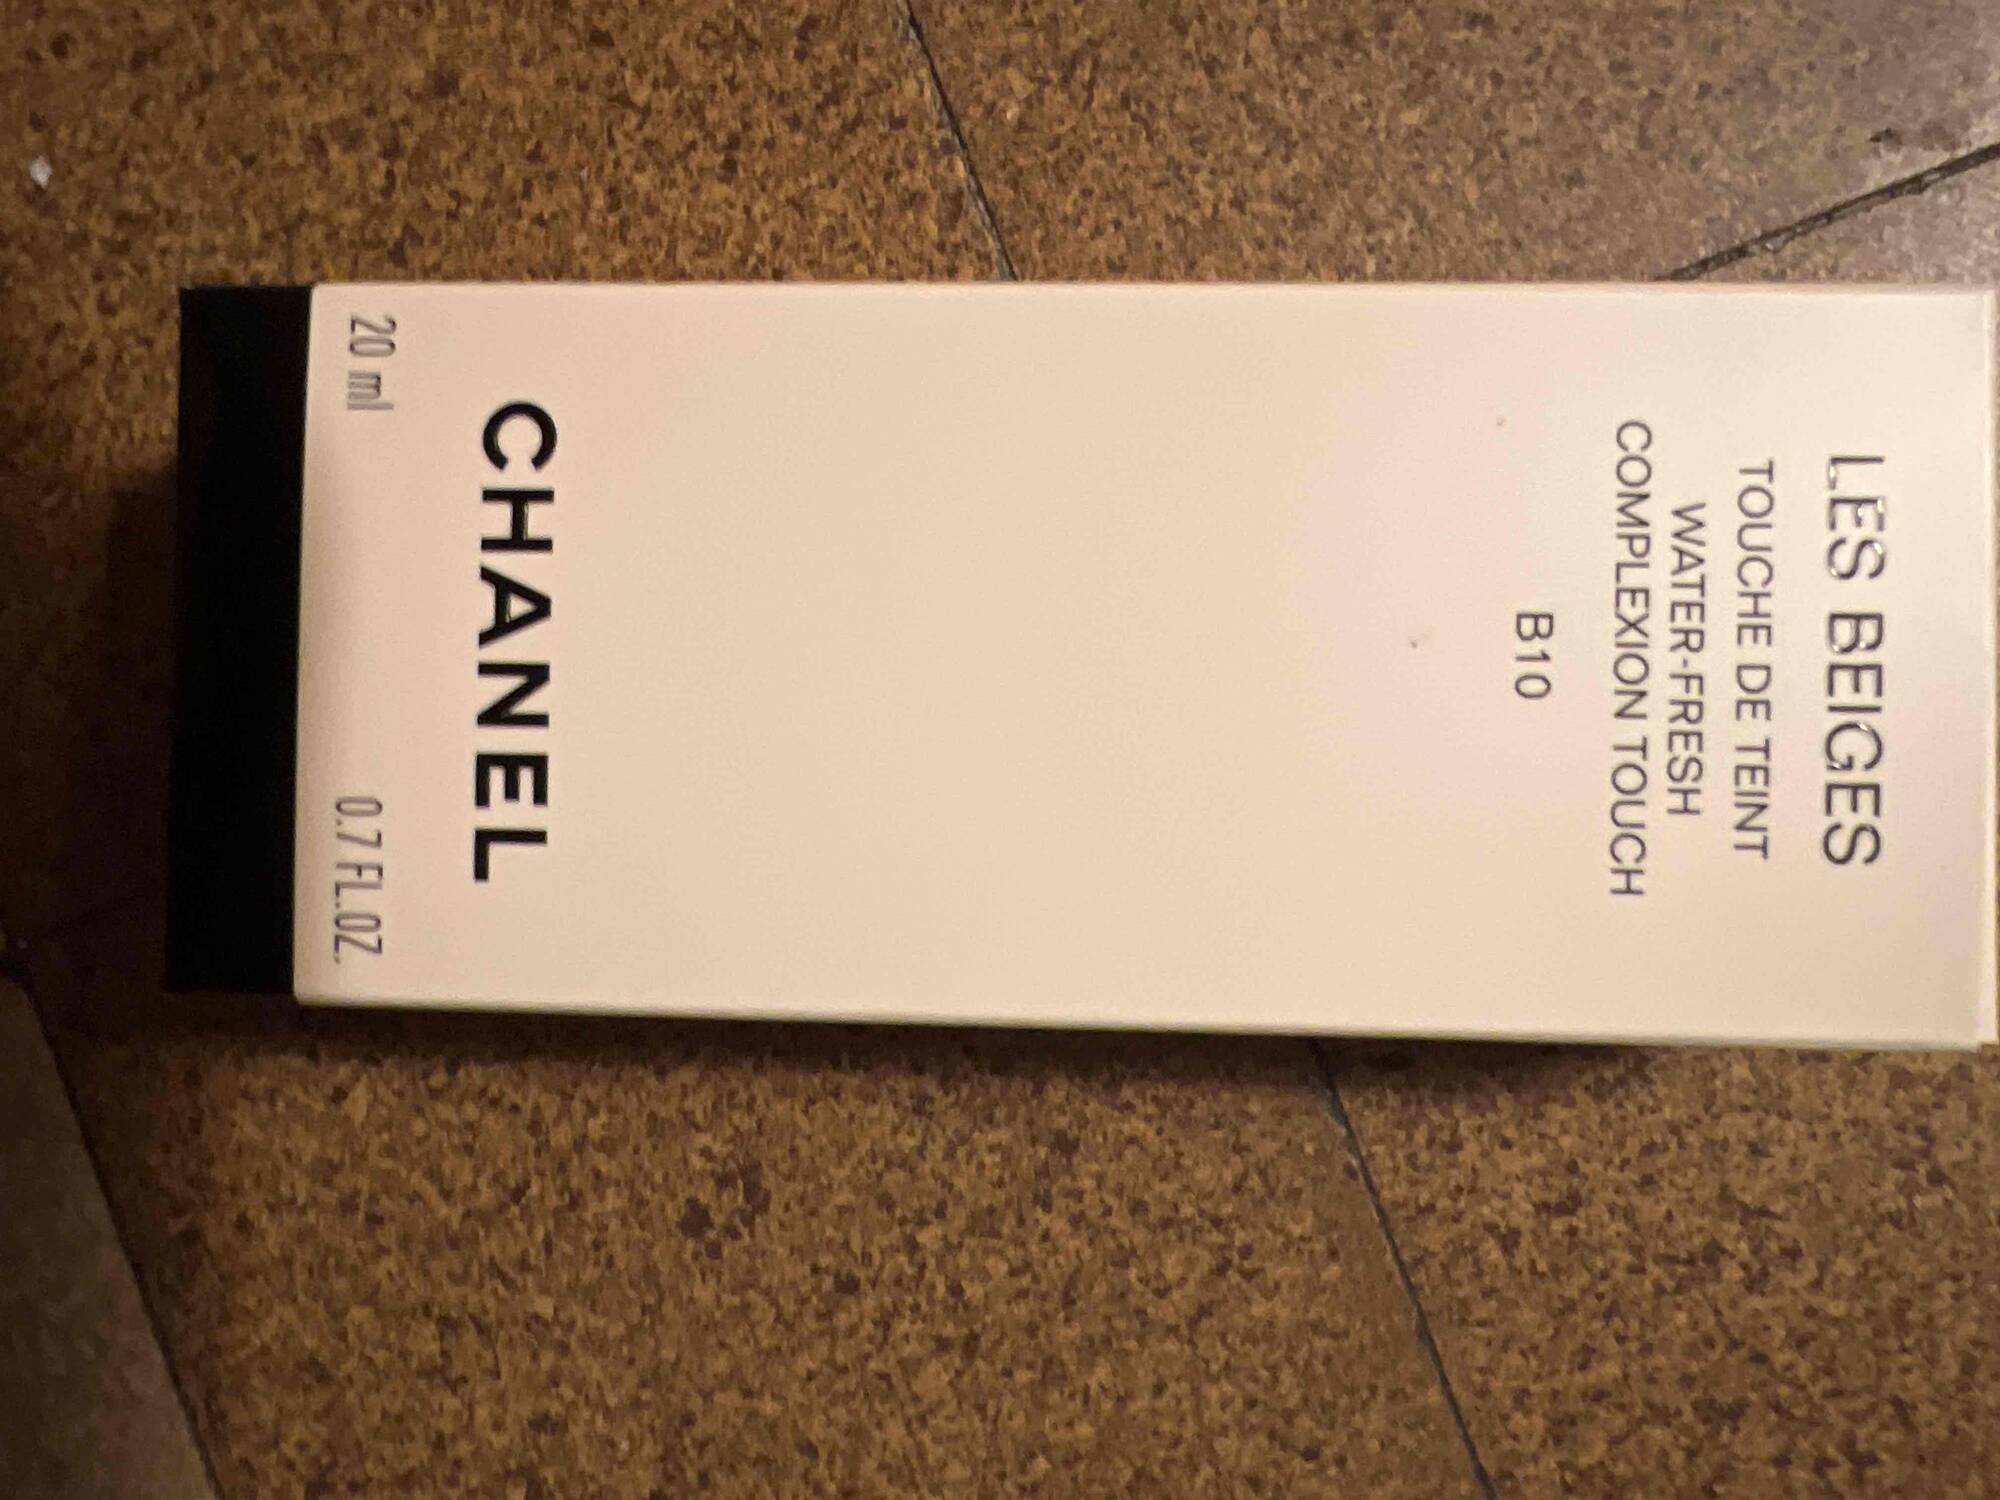 Composition CHANEL N°1 de Chanel - B30 Fond de teint revitalisant - UFC-Que  Choisir